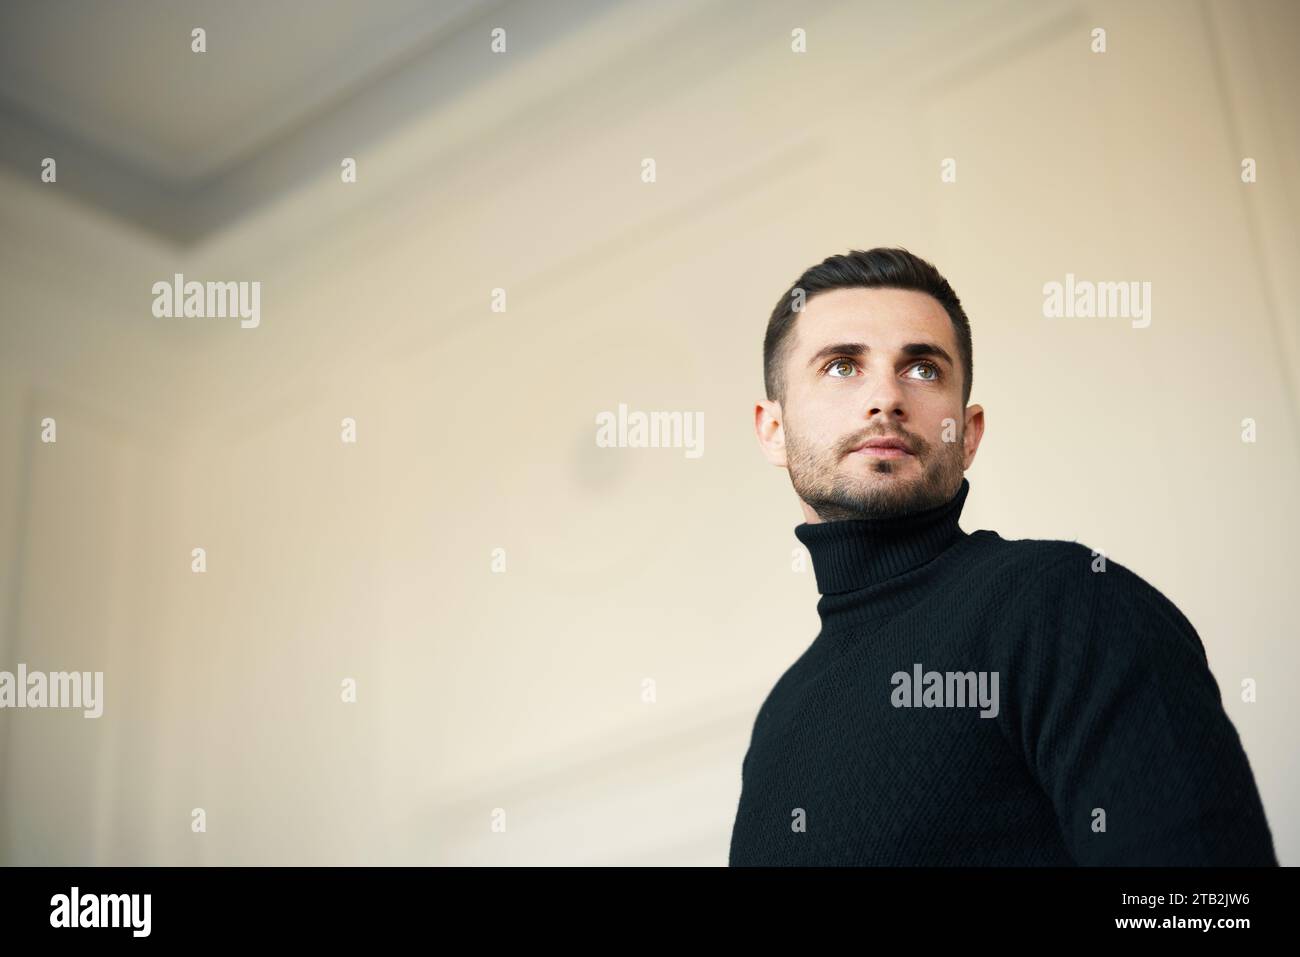 Uomo pensivo con dolcevita nera che guarda verso l'alto in una stanza spaziosa e luminosa. Ritratto di bellezza maschile Foto Stock